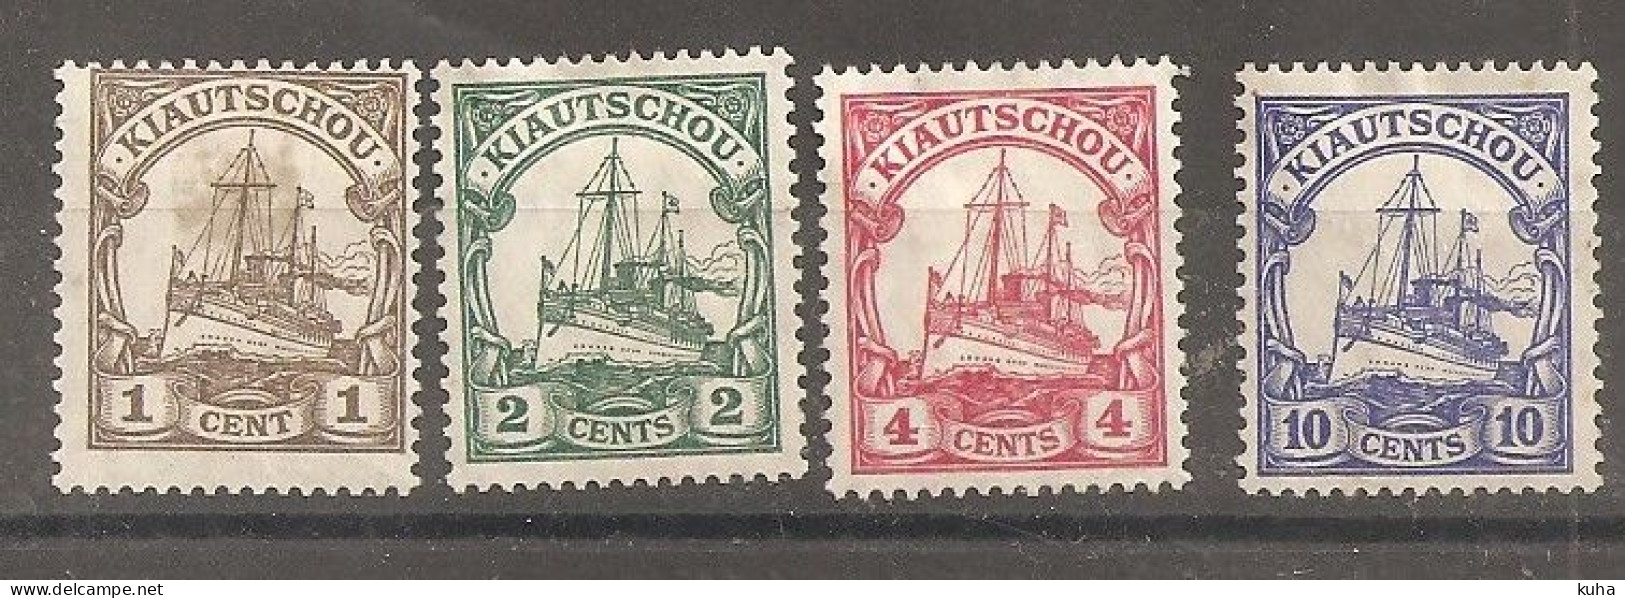 China Chine  Germany Kiautschou 1905 MH Water Mark - Unused Stamps